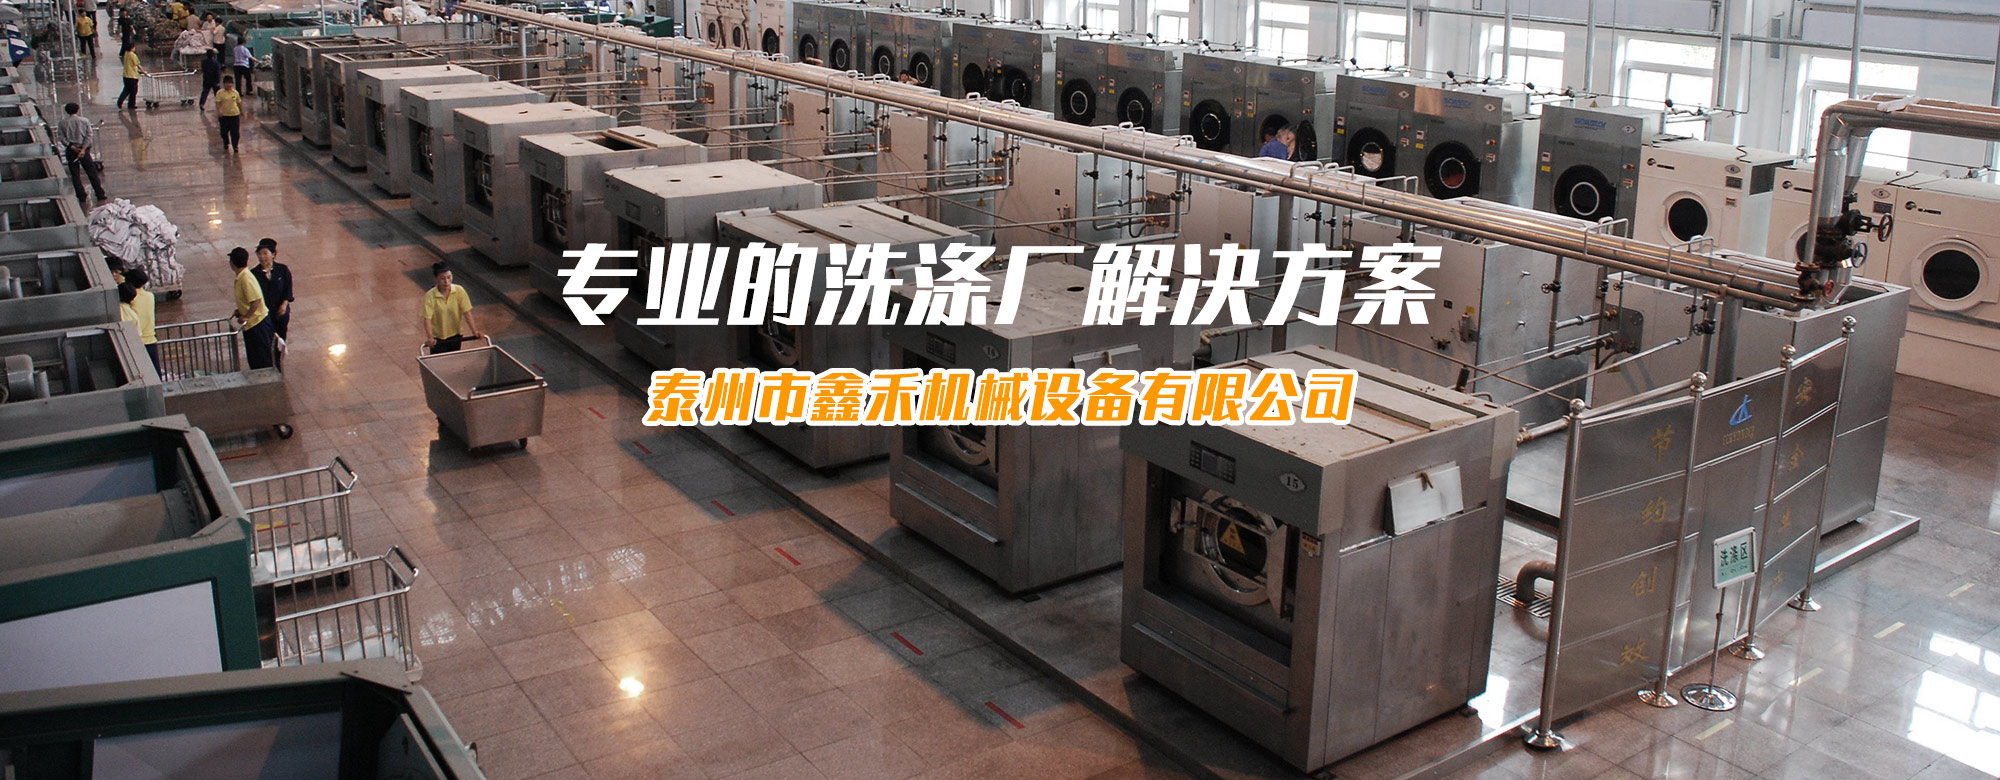 洗涤机械-洗涤设备-洗衣房设备